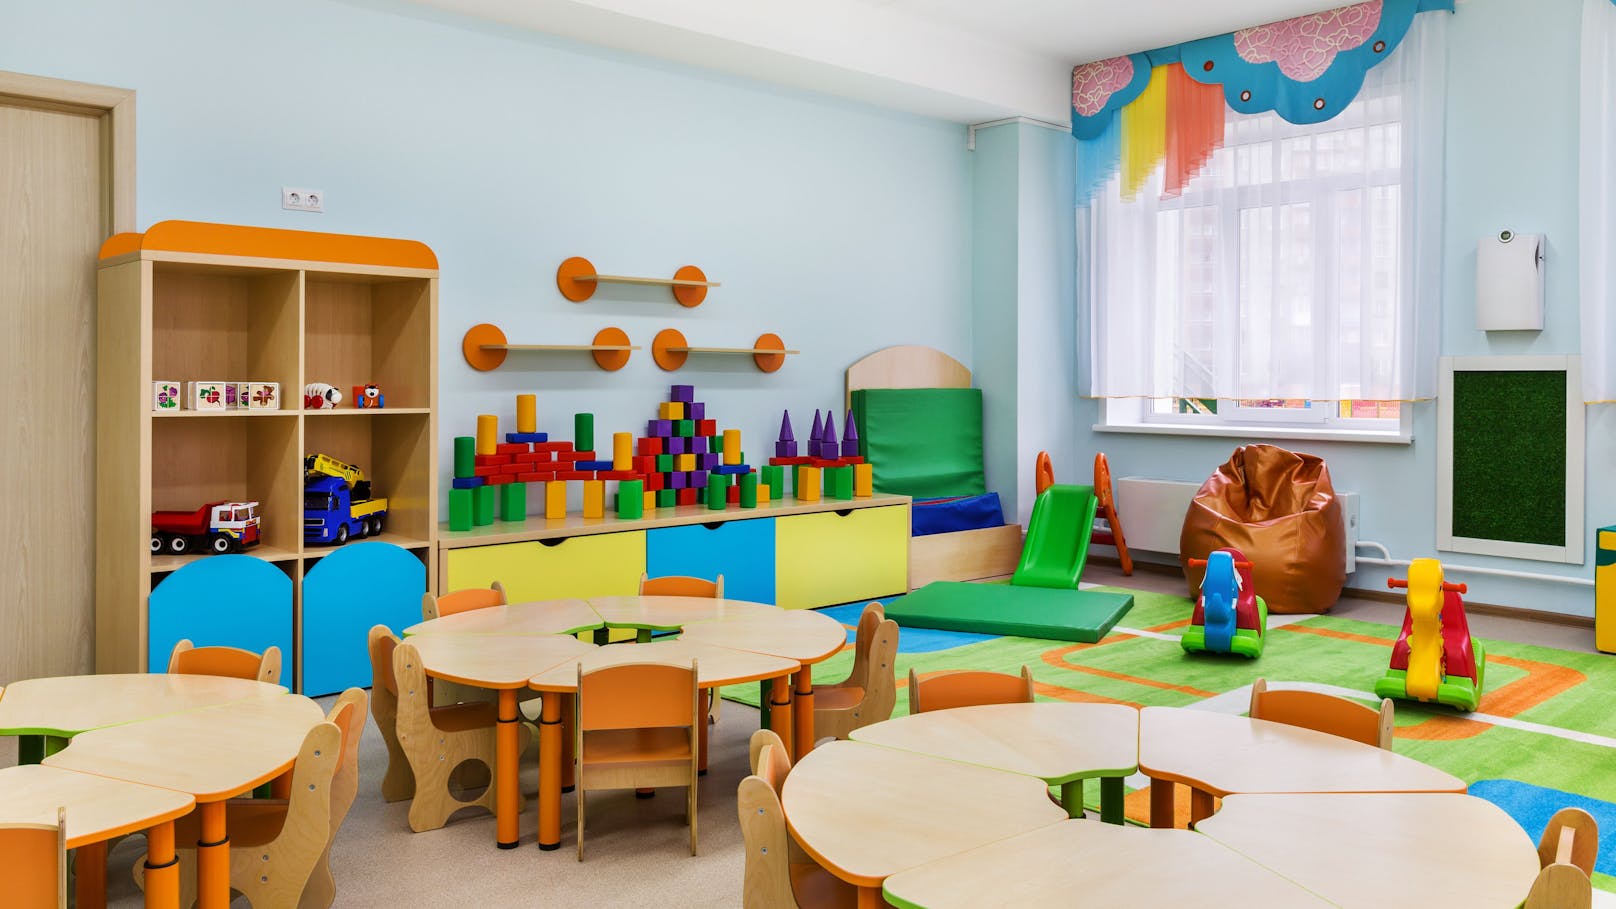 Seit März 2021 wird gegen einen Wiener Kindergartenpädagogen ermittelt. Nun kommen mehr Details ans Licht.